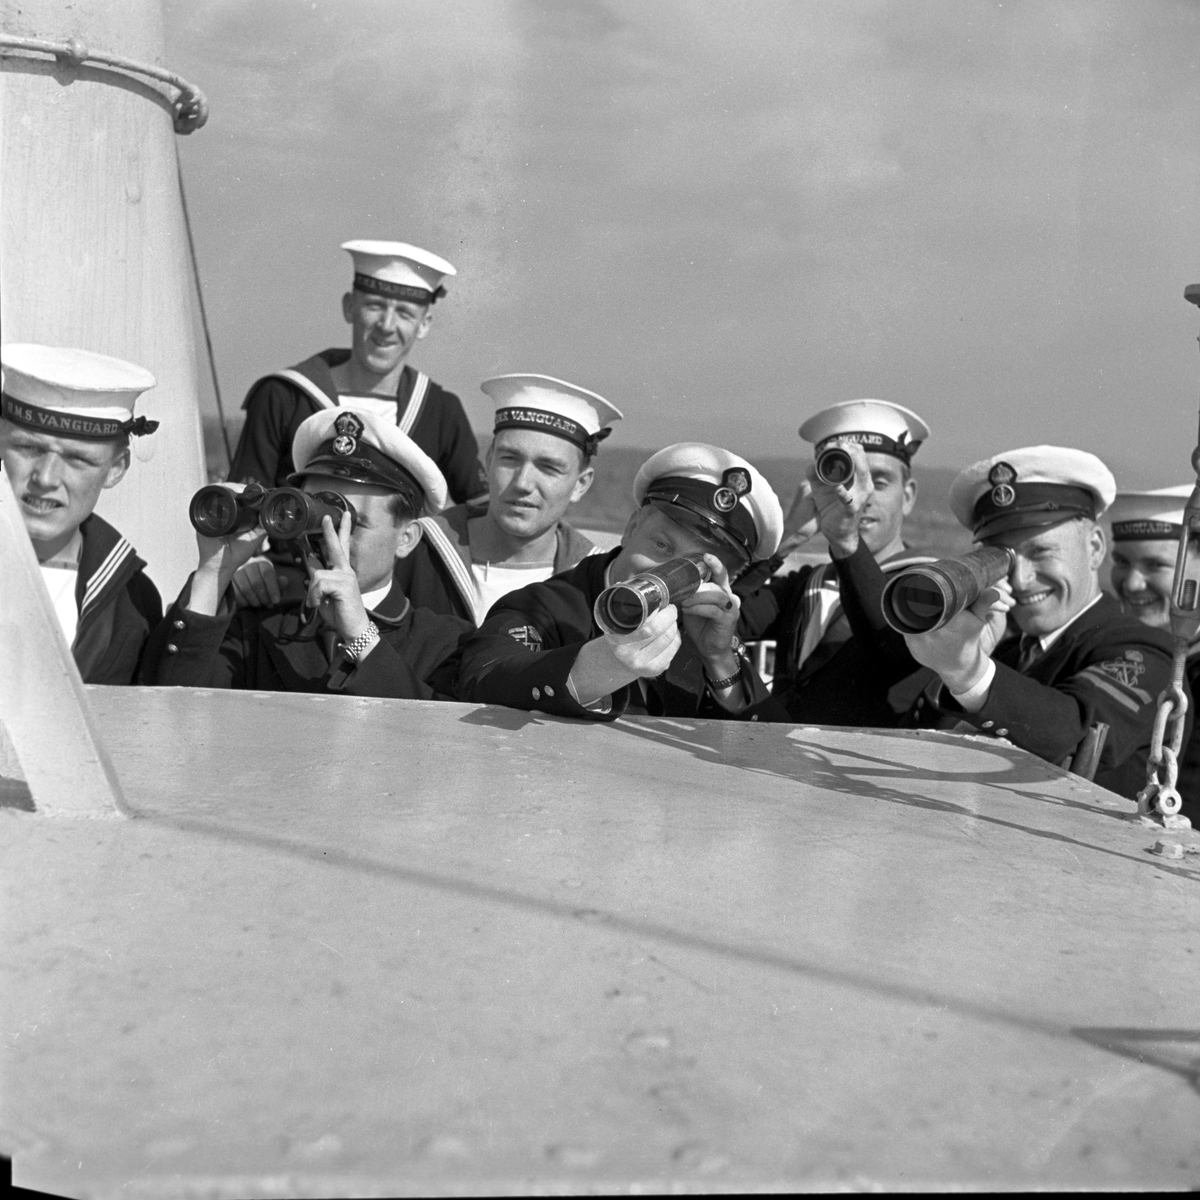 Serie. Det engelske slagskipet HMS Vanguard på flåtebesøk i Oslo. Parade med musikkorps ombord. Noen av mannskapet står med kikkerter og en pusser kanoner. Fotografert 21. juni 1954.